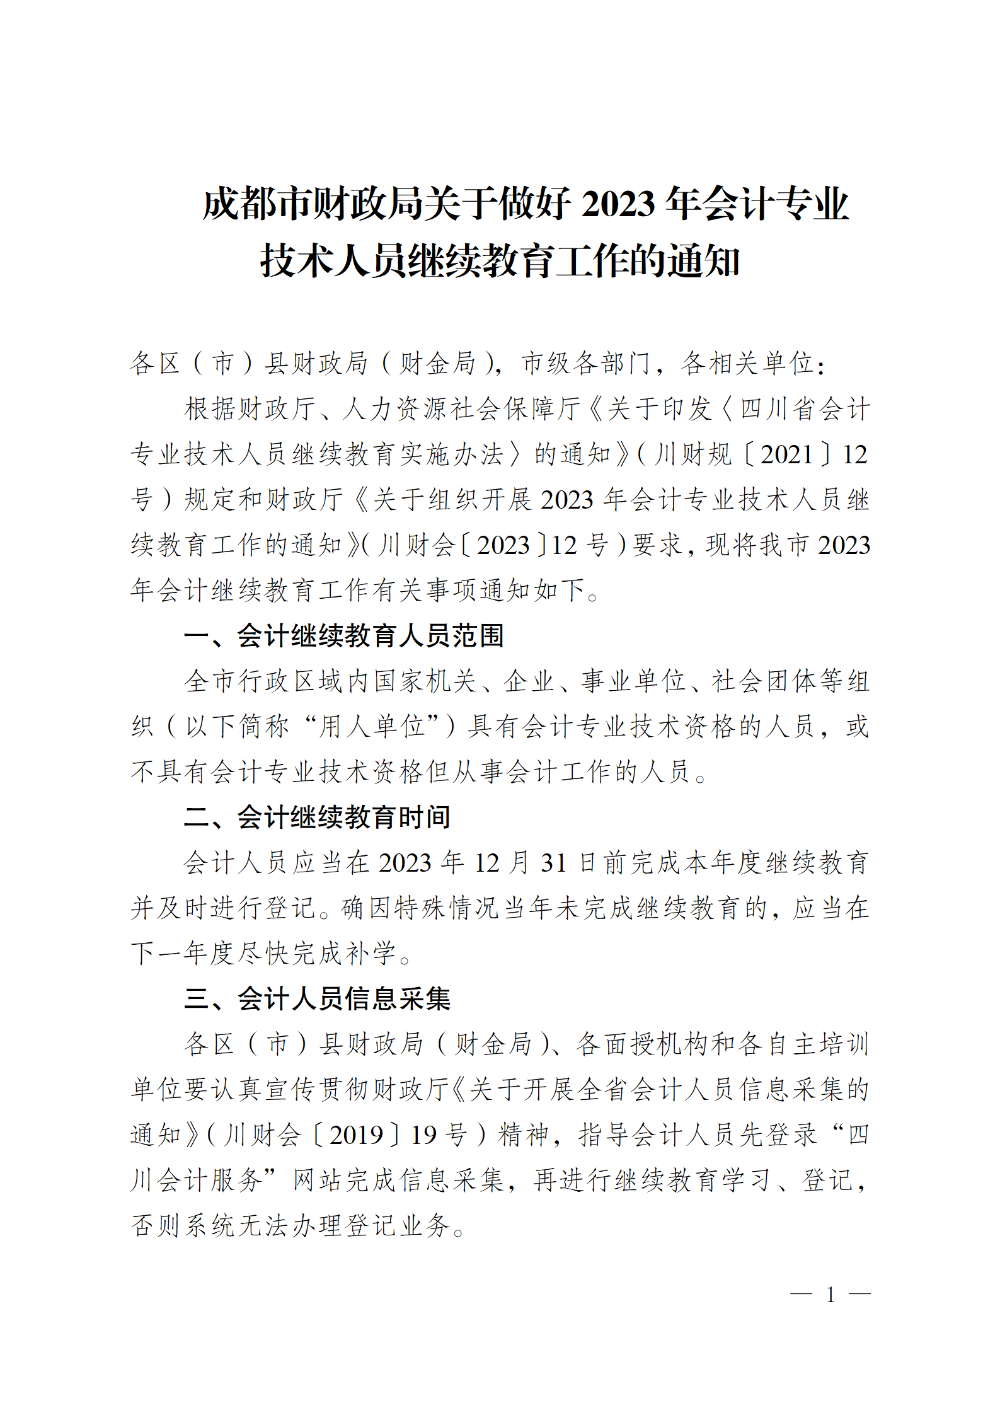 四川成都2023年会计专业技术人员继续教育工作的通知